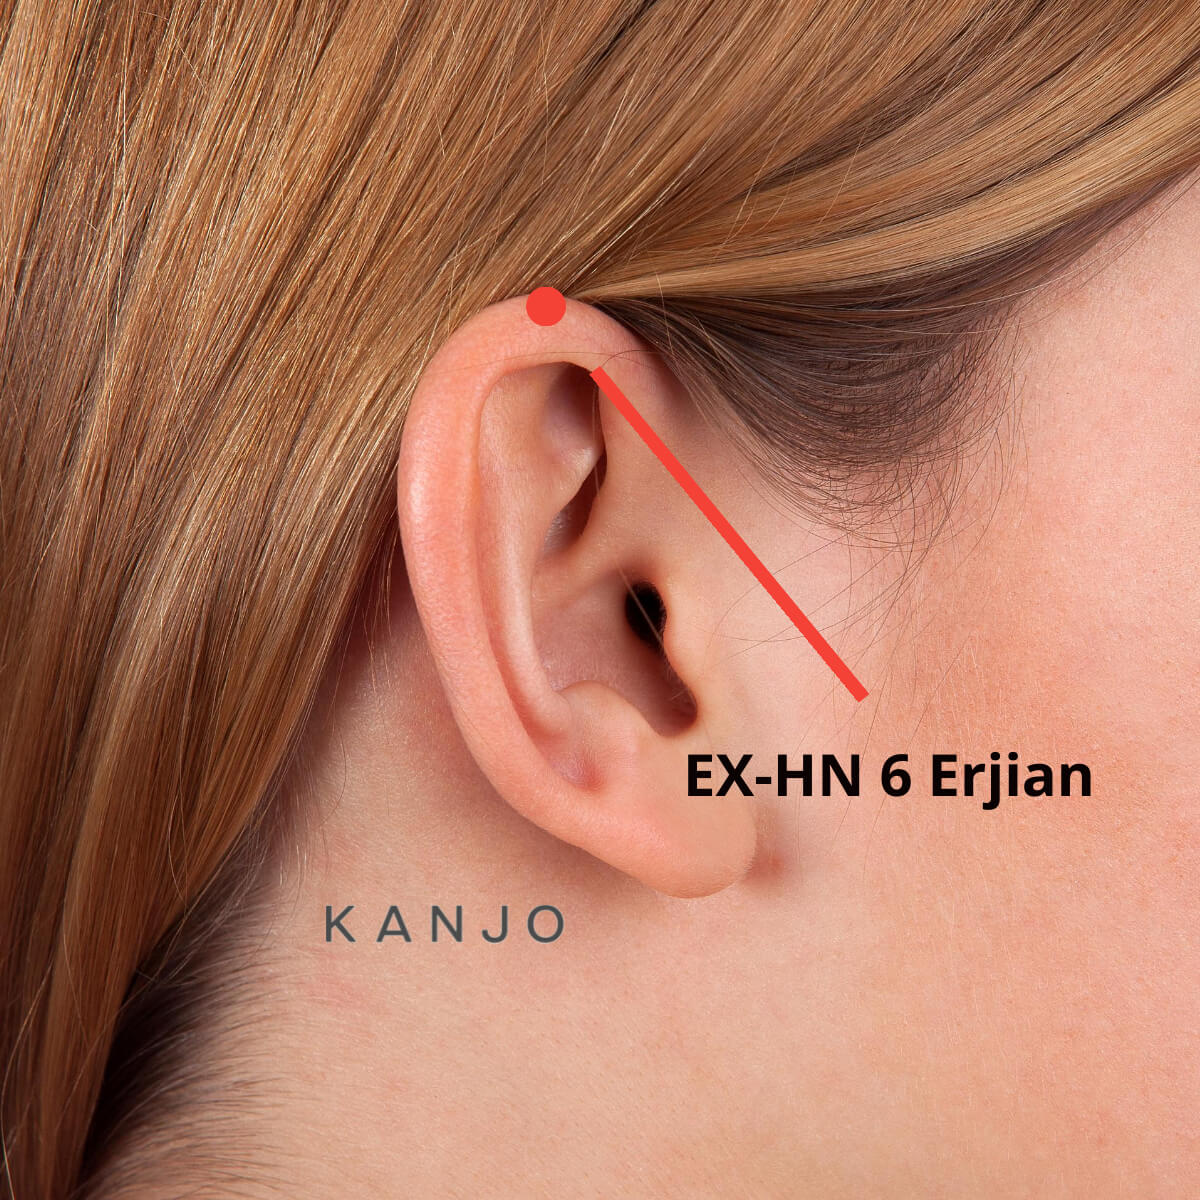 EX-HN 6 Erjian or Ear Apex Pressure Point